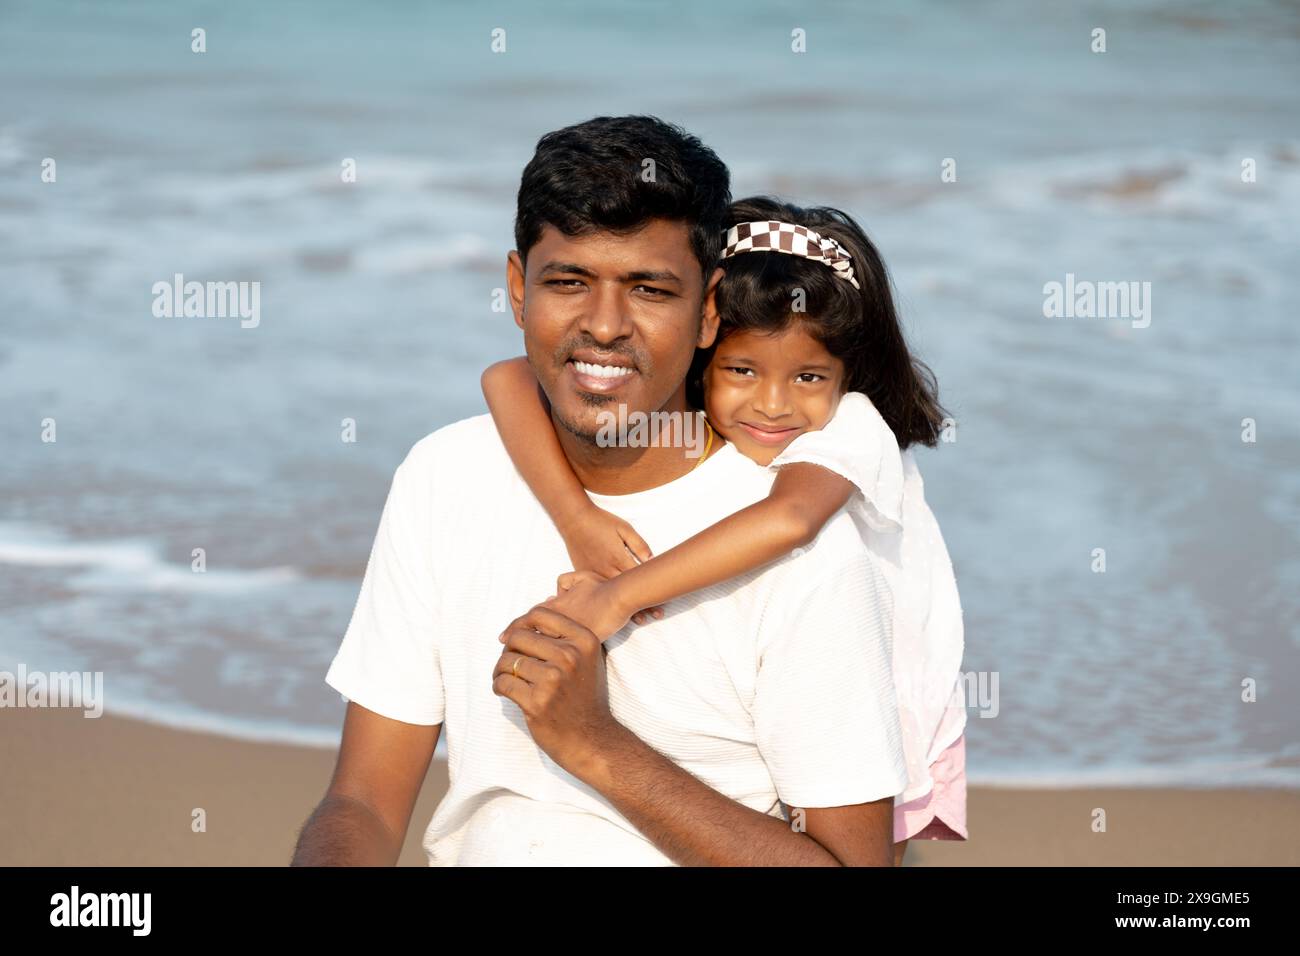 Ein ruhiger Strandtag, den ein Vater und seine kleine Tochter teilen. Ihre liebevolle Umarmung fängt einen kostbaren Familienmoment ein. Stockfoto